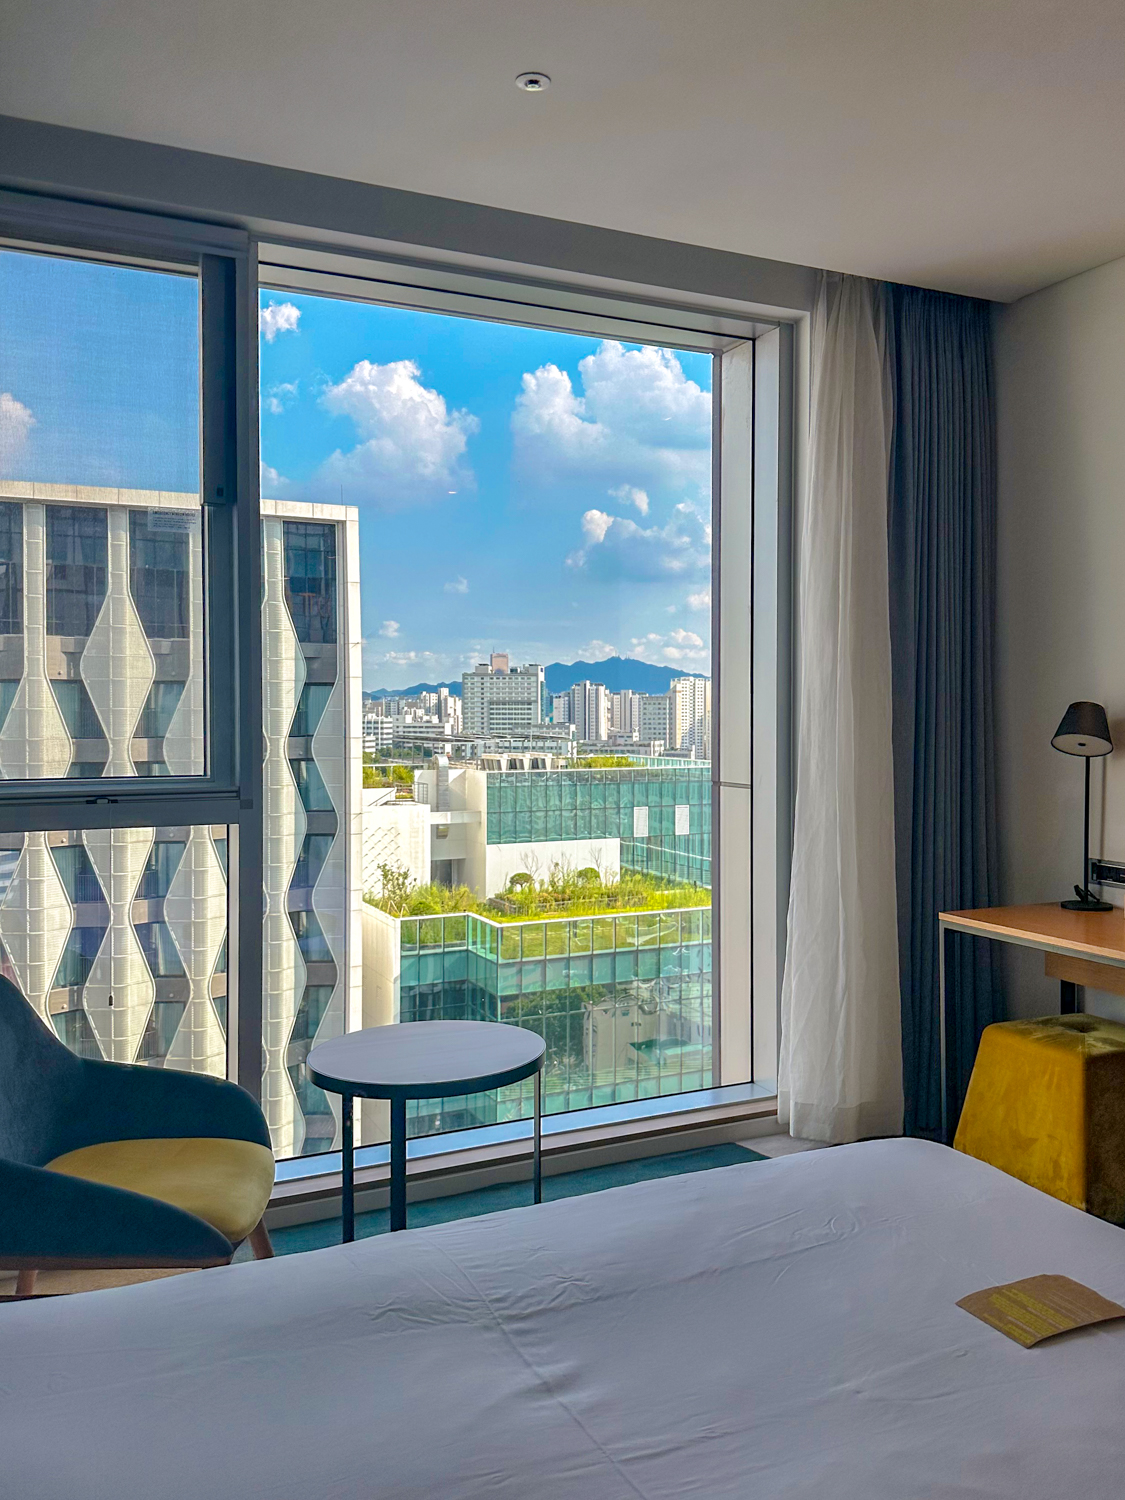 L7 홍대 호텔 20층 고층 객실 전경